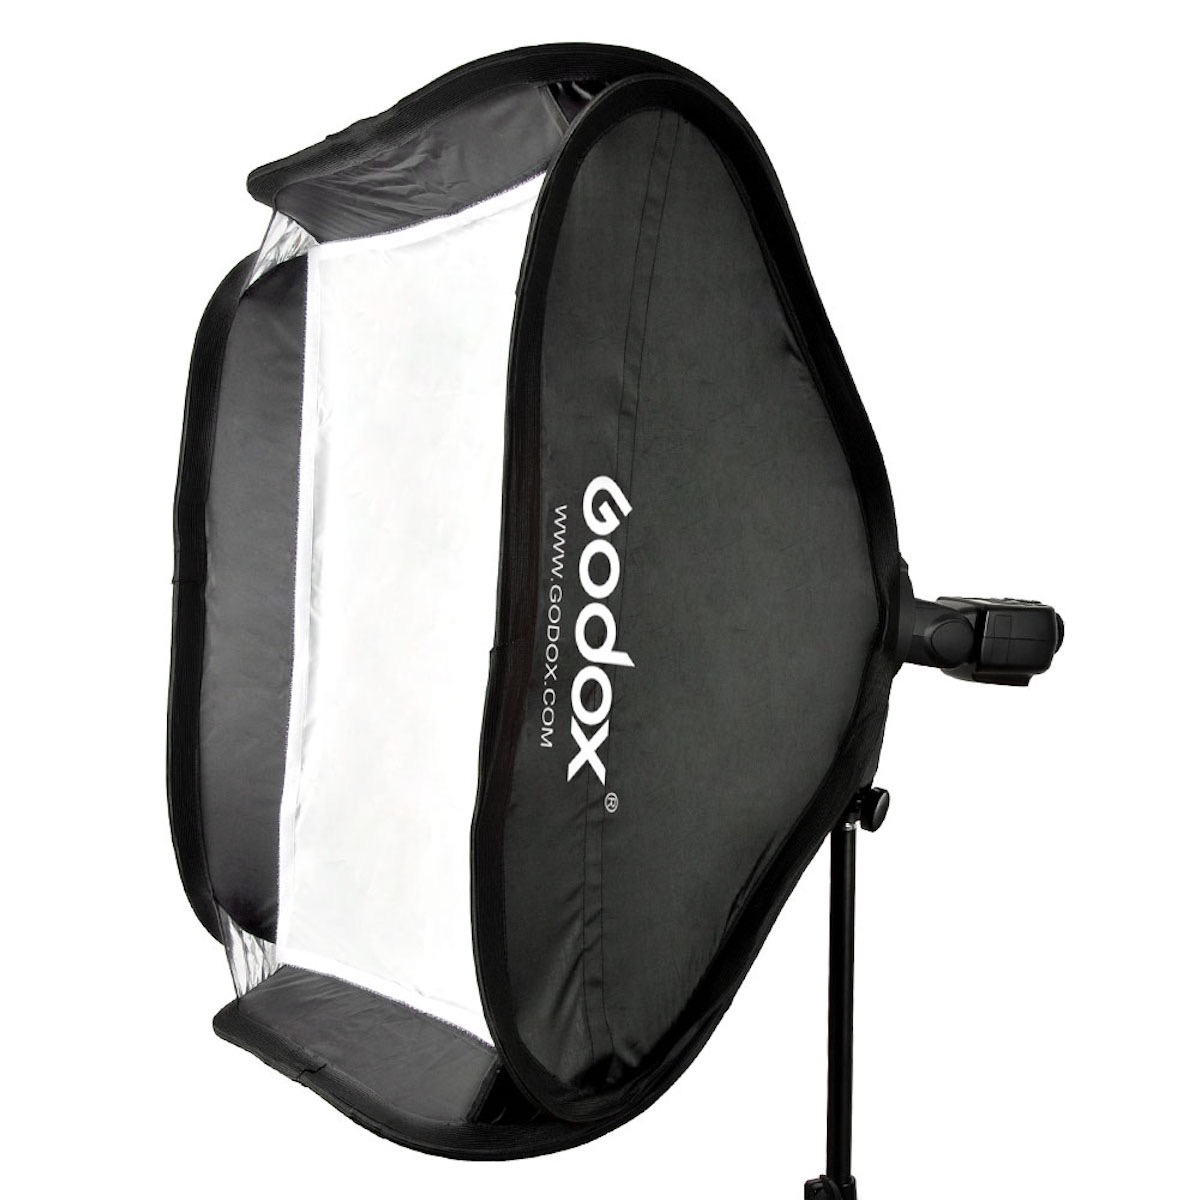 Godox S-Halterung Elinchrom Rotolux + Softbox 60x60cm + Gitter